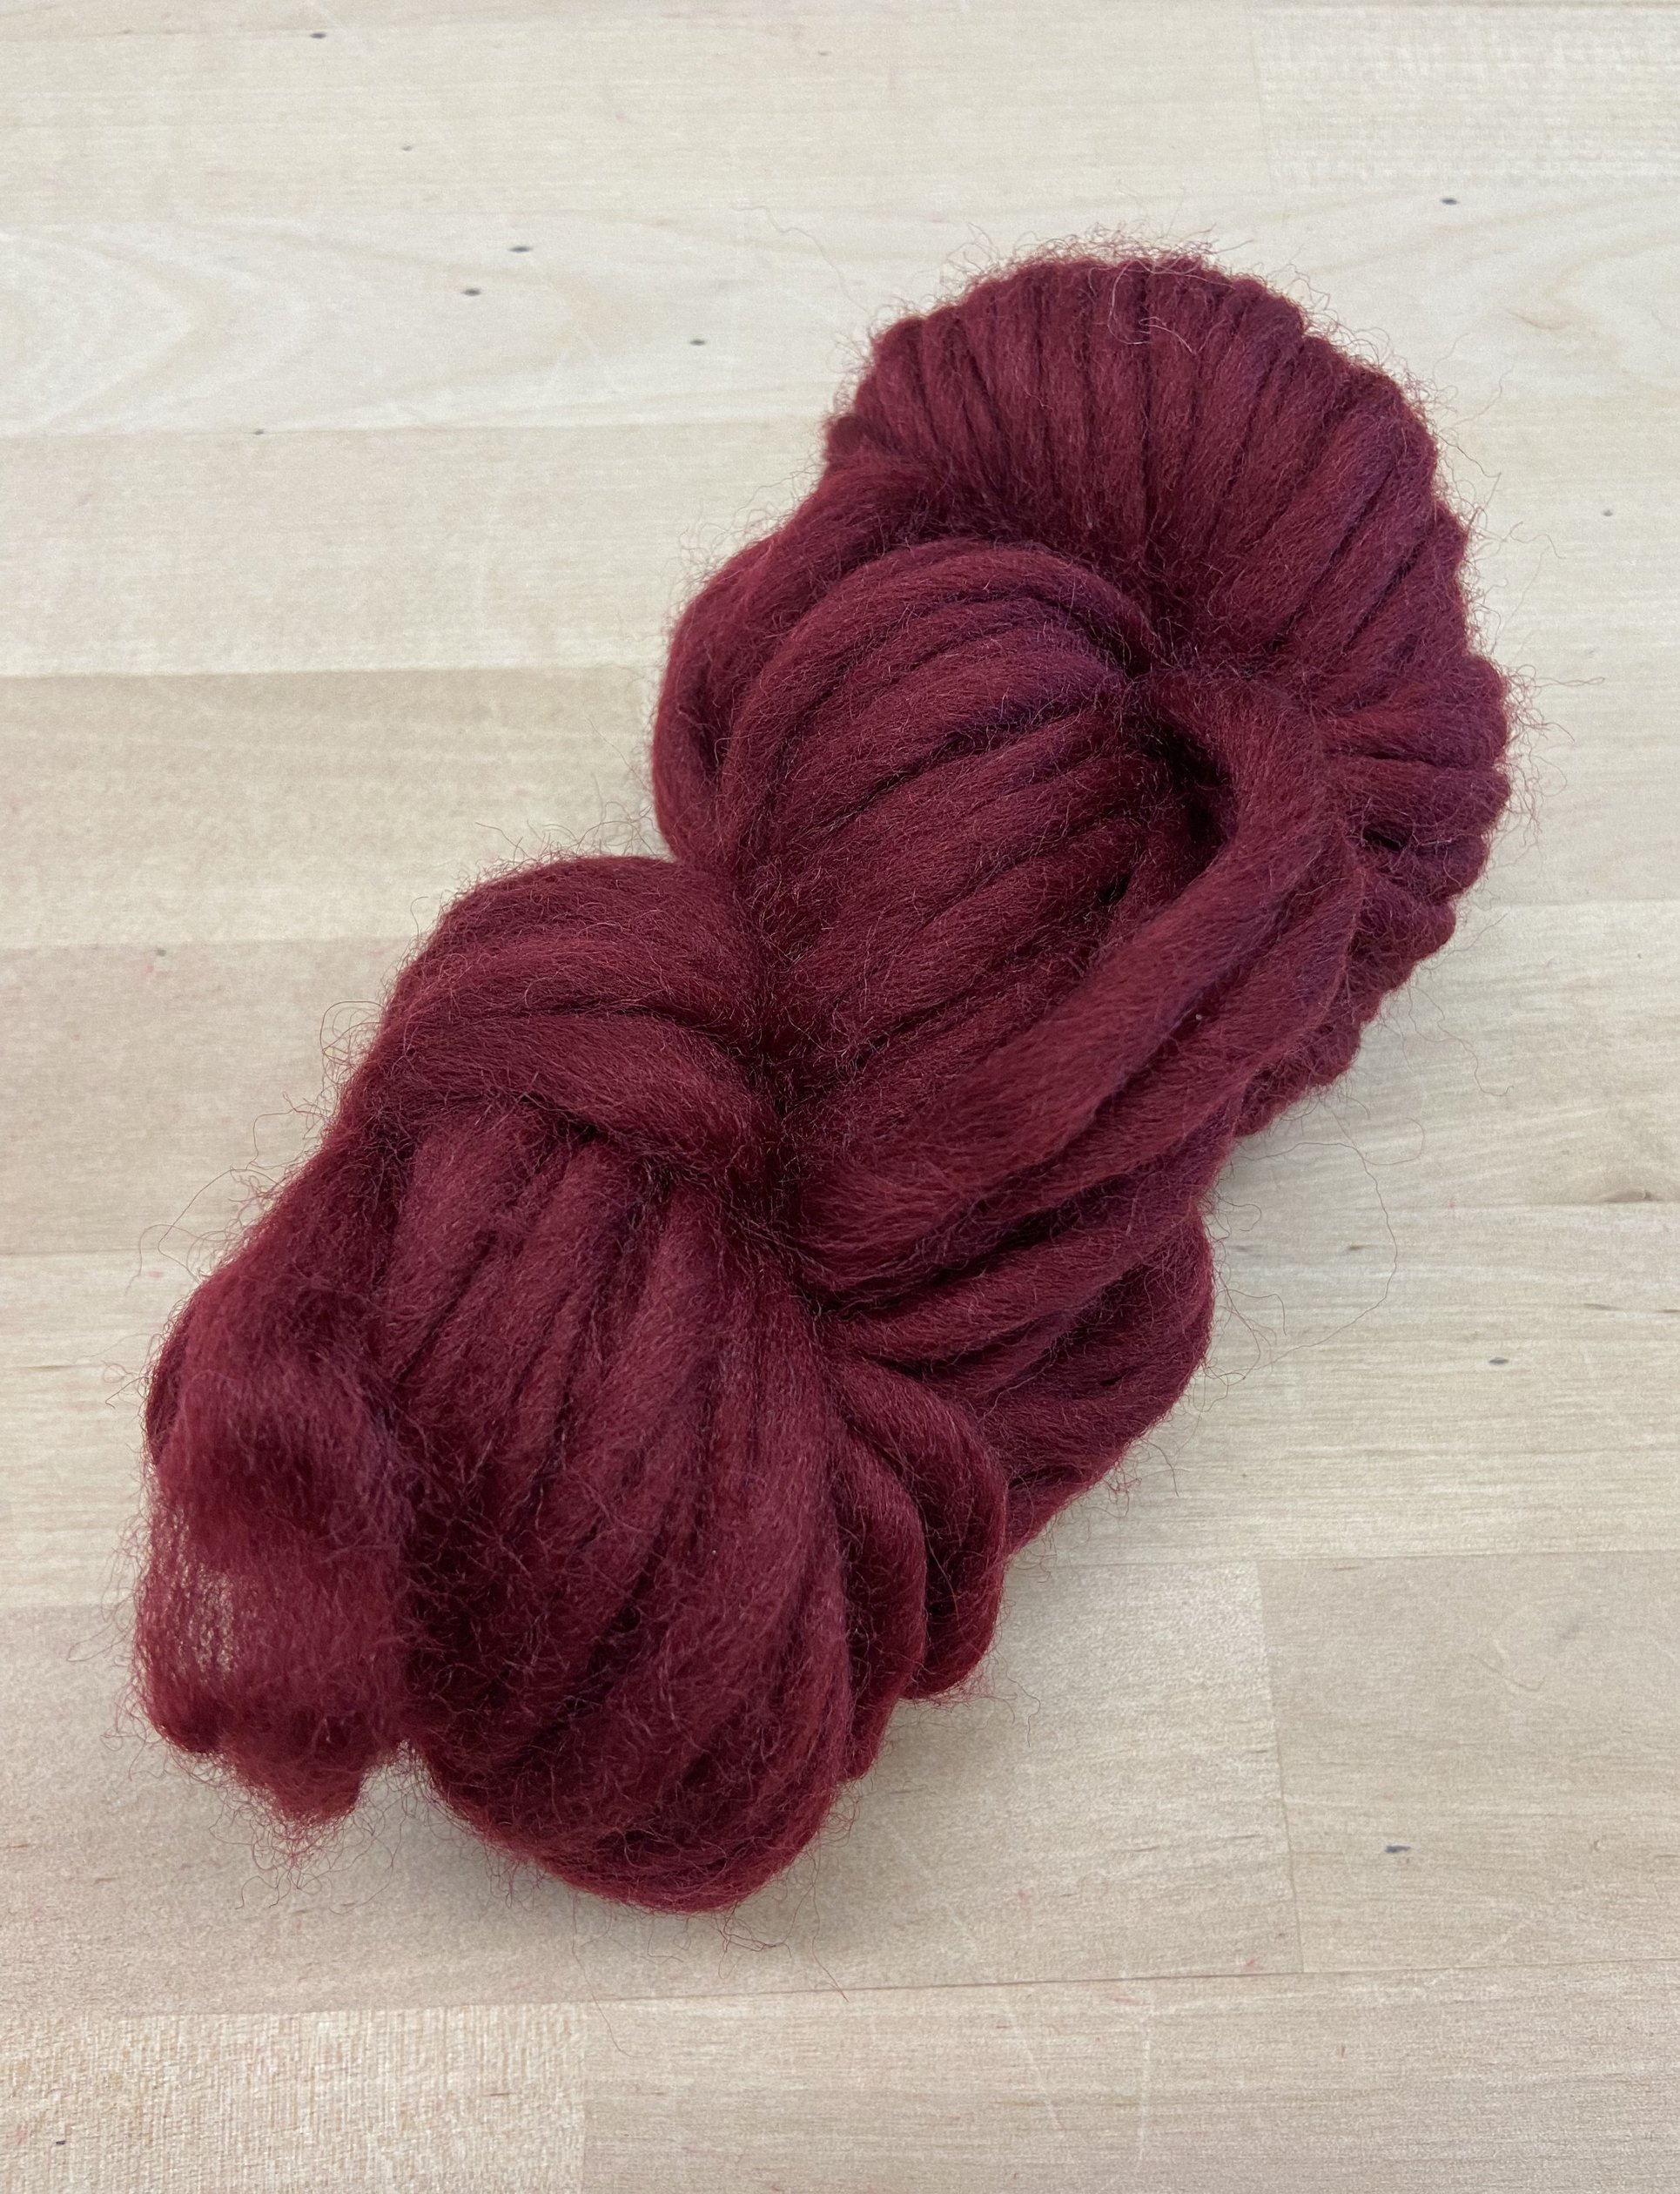 Wool Rug Yarn